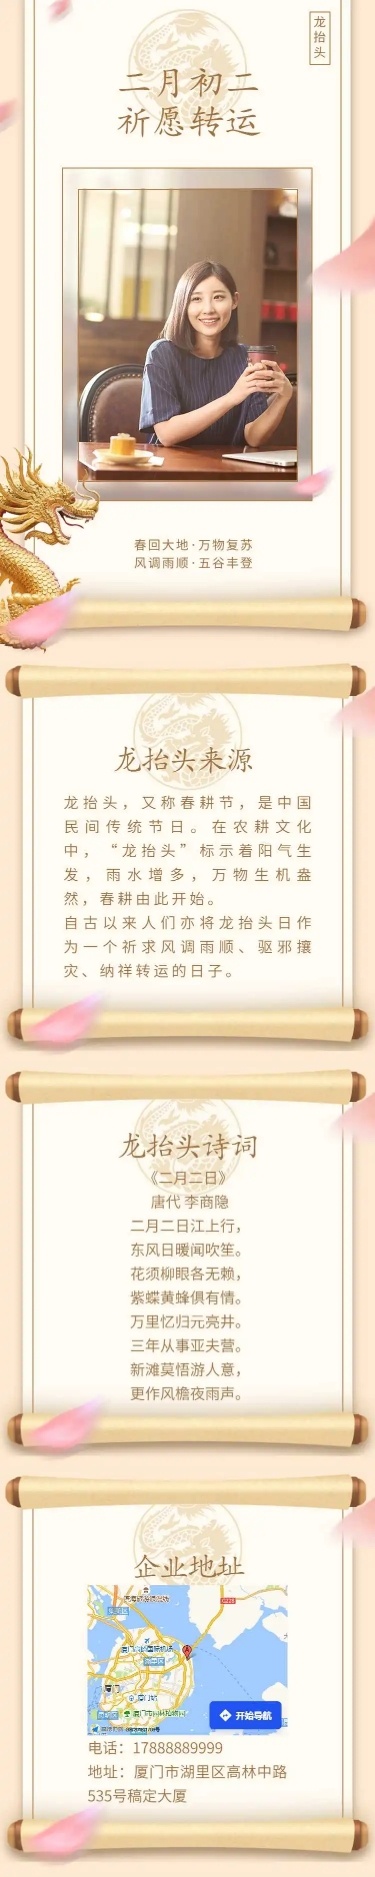 H5长页节日二月二龙抬头节日祝福问候企业宣传节日科普